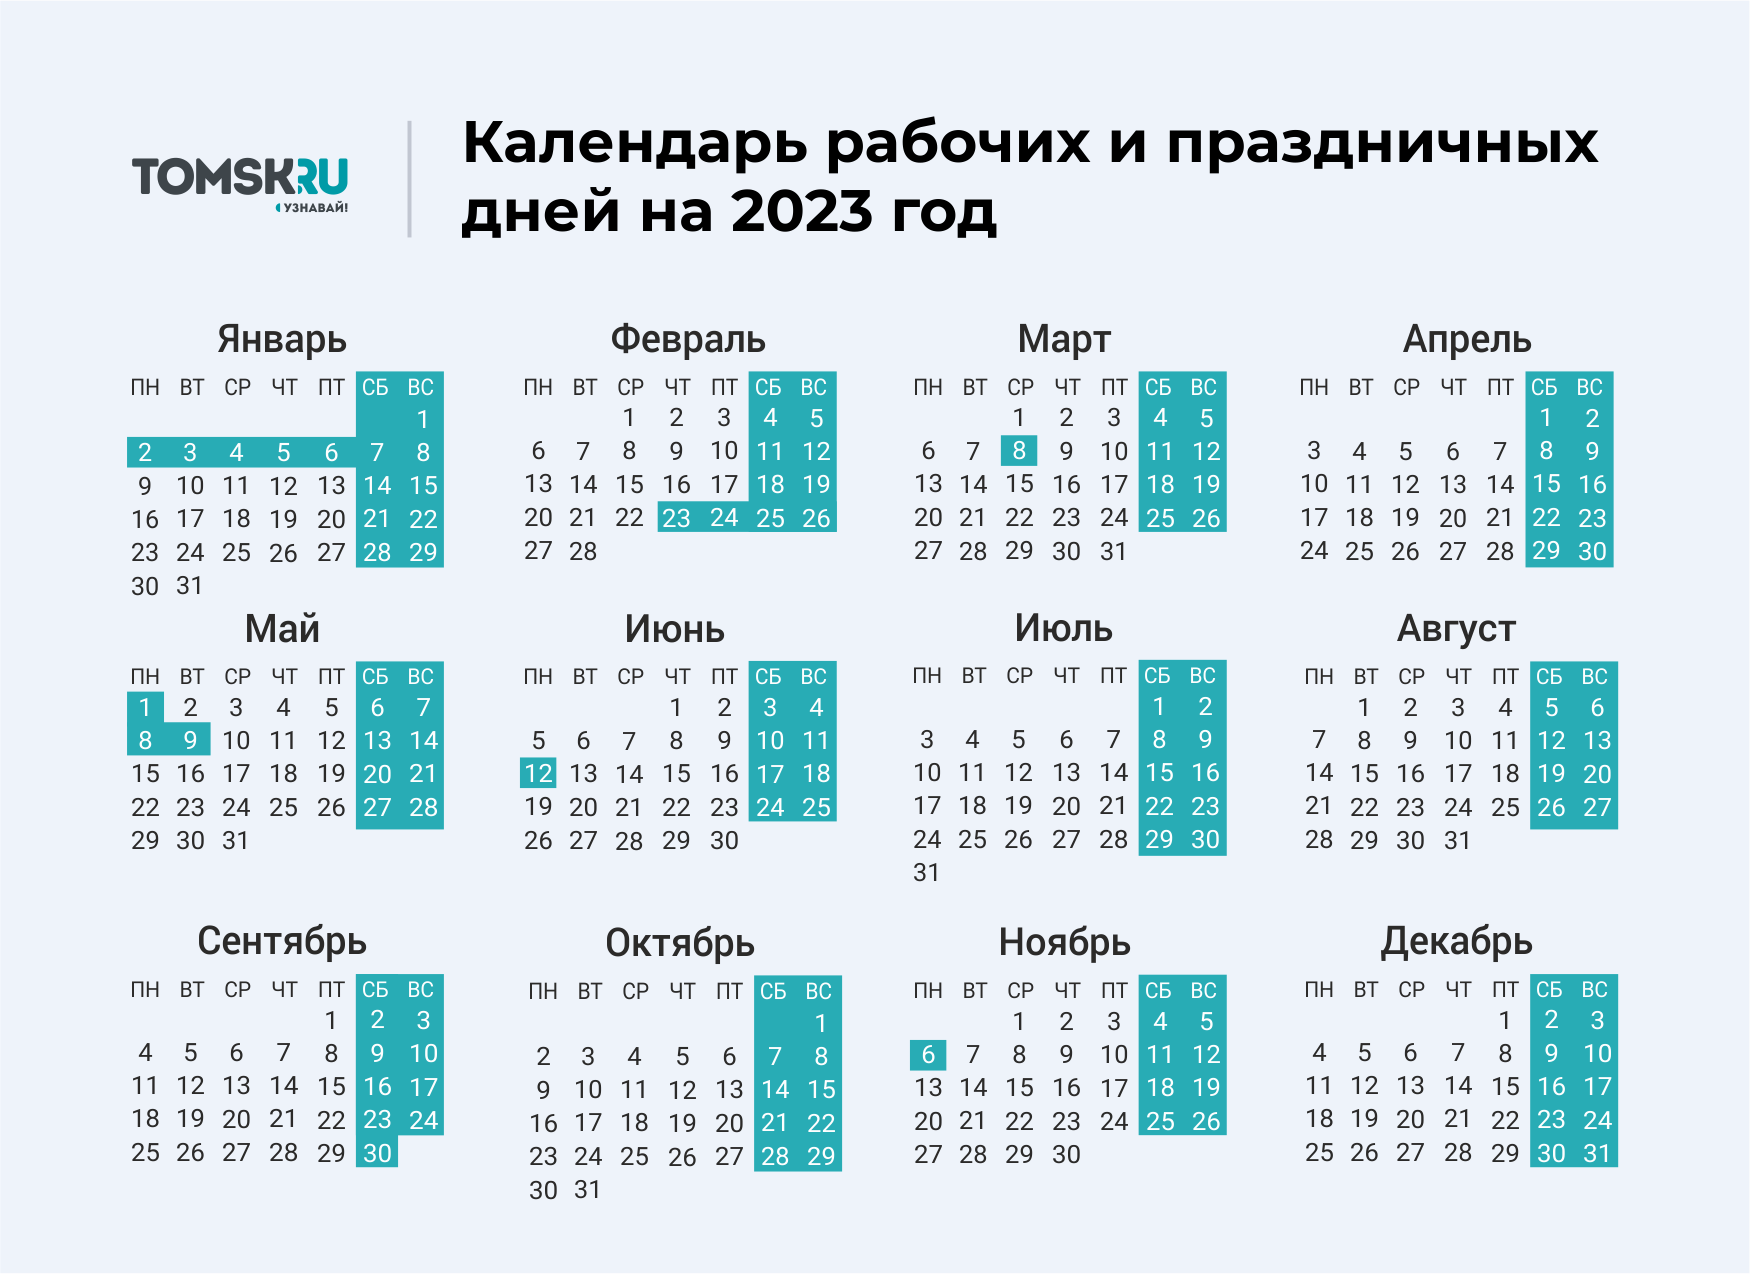 Как мы будем отдыхать в мае 2024. Выходные дни в 2023 году в России календарь. Календарь выходных и праздничных дней на 2023 год в России. Календарь праздничных выходеыхв 2023 году. Календарь на 2023 год с праздниками и выходными выходные снизу.